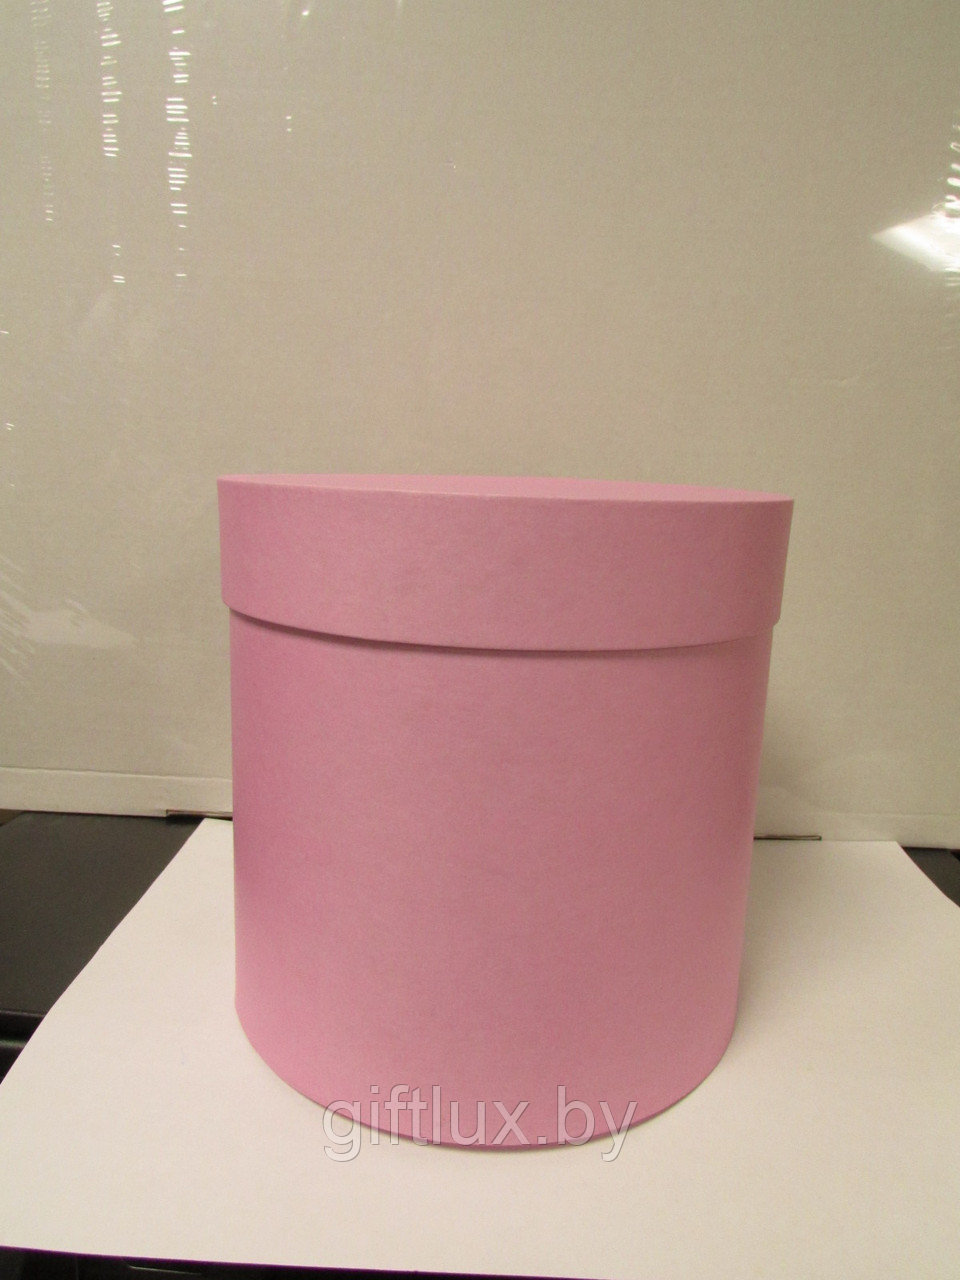 Коробка подарочная круглая "Однотон", 20*20 см ярко-розовый